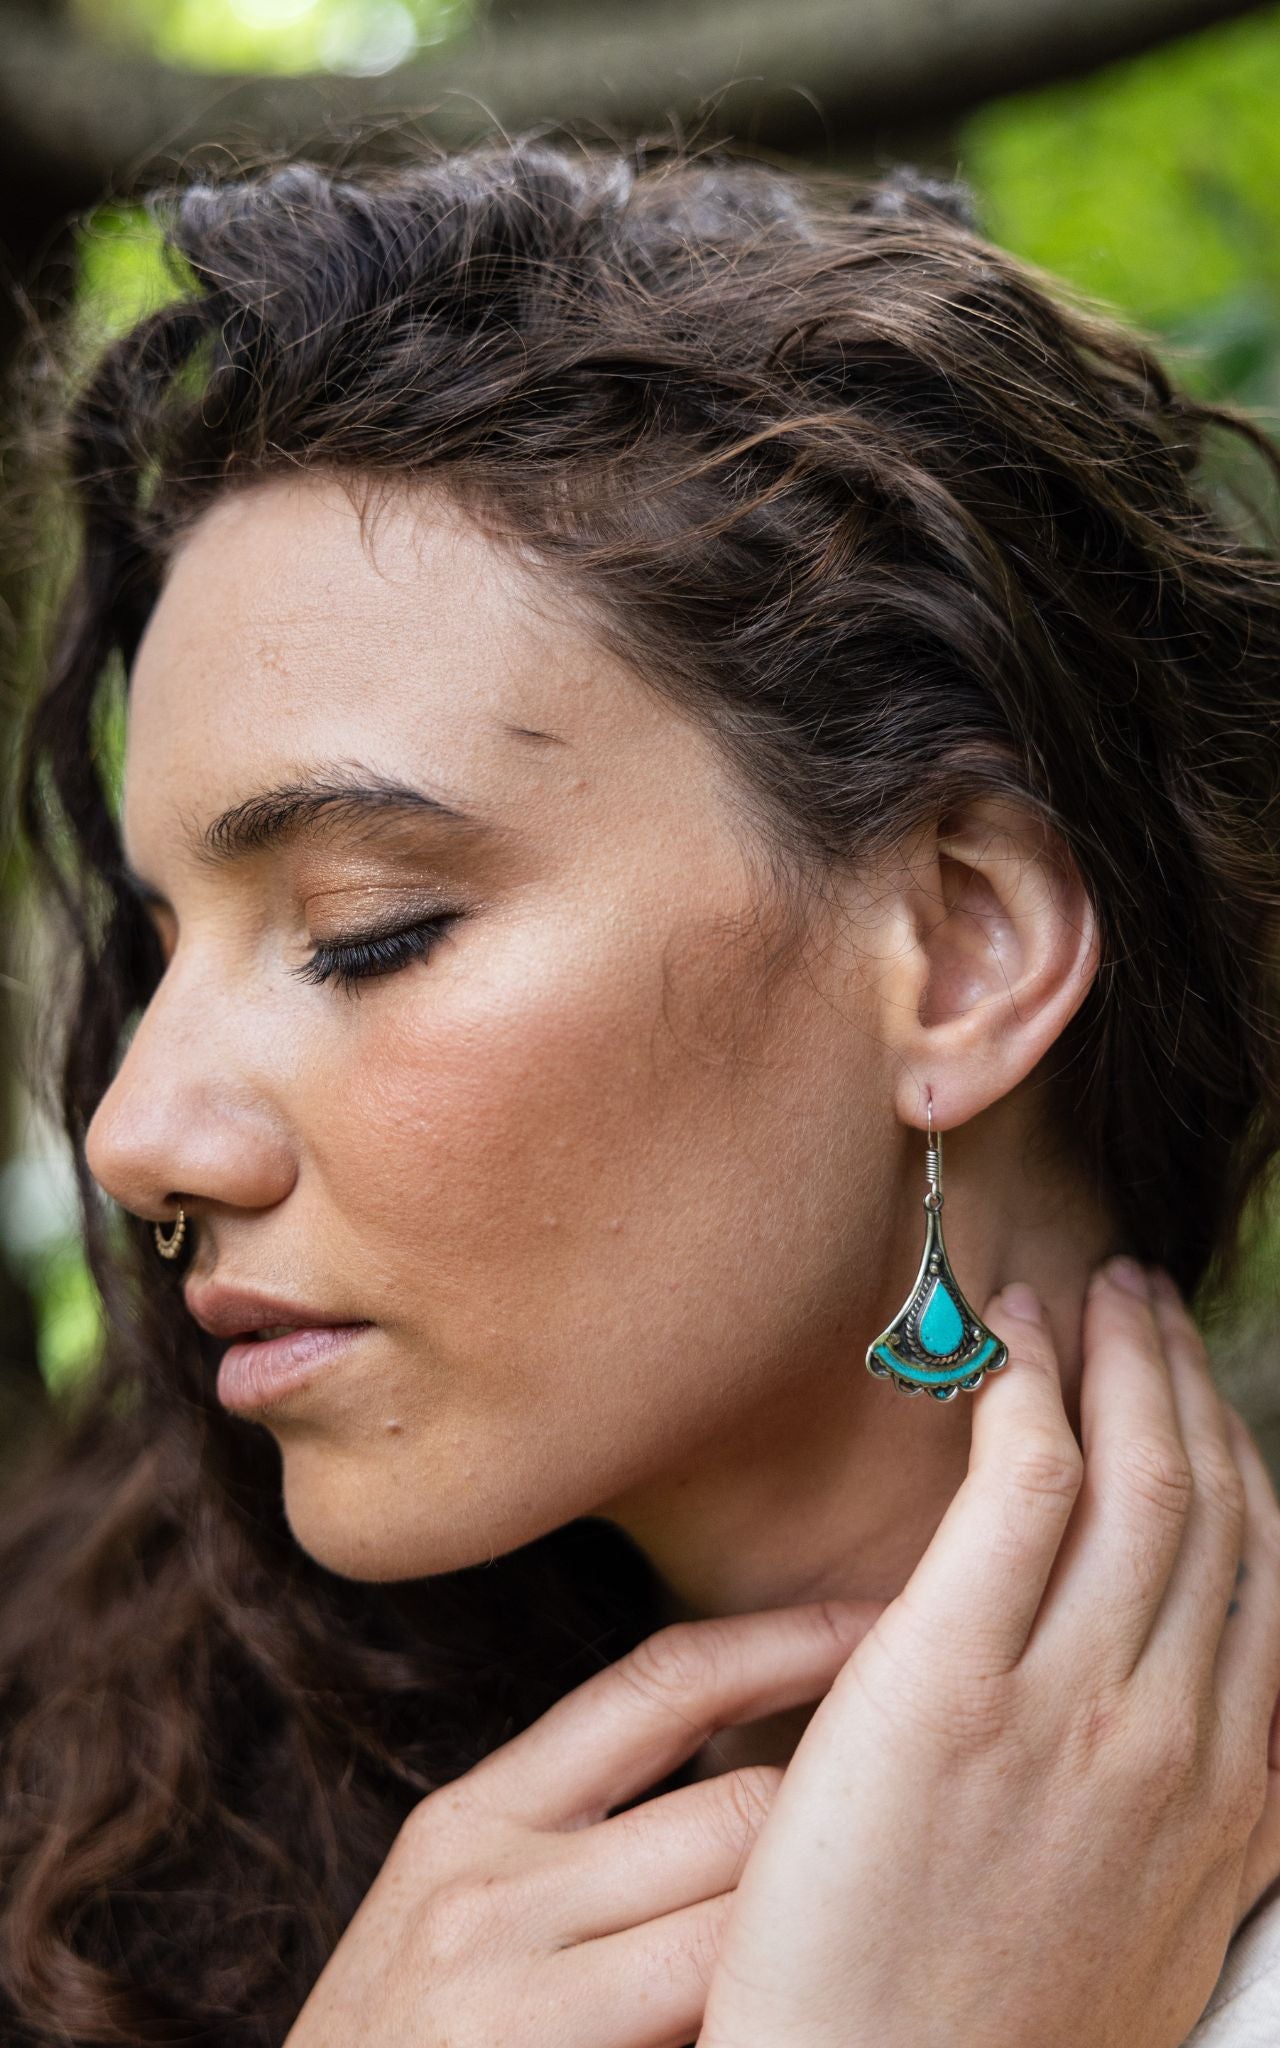 Surya Australia Ethical Tibetan Earrings from Nepal - Alani Turquoise